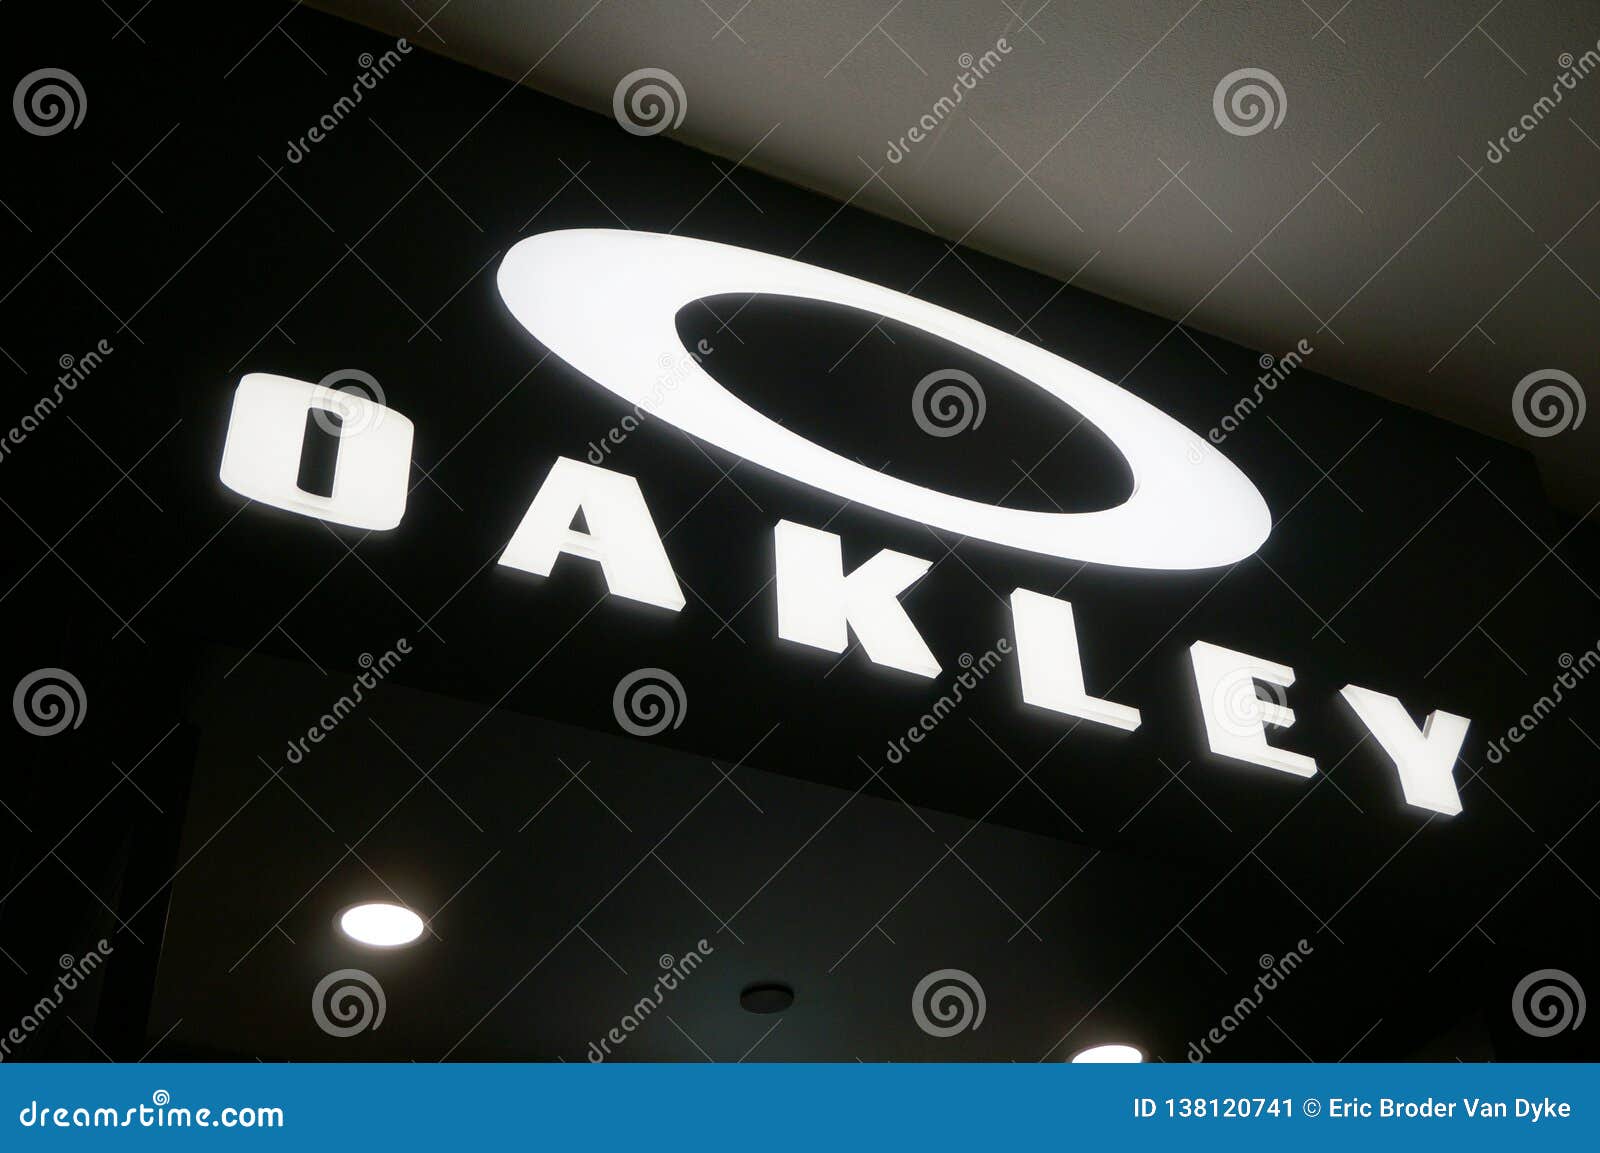 oakley sign in